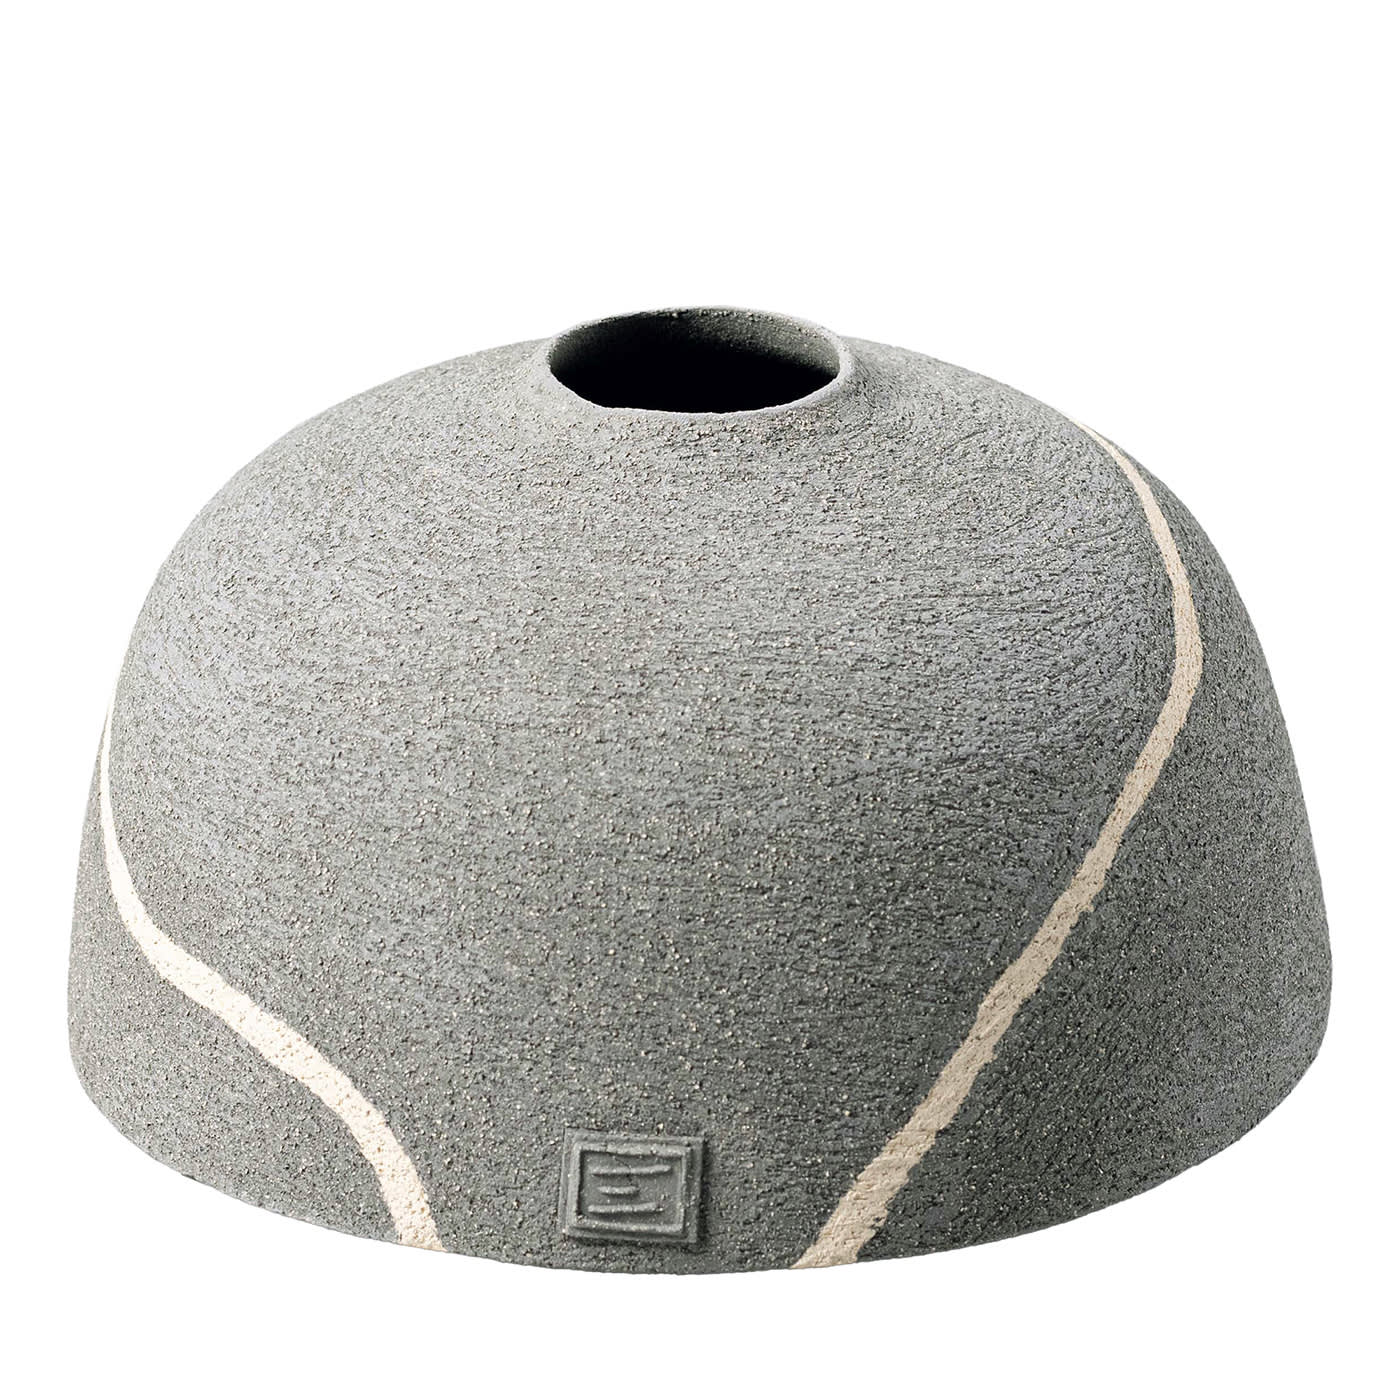 Stone Small Gray Bell - Elio Cristiani Design